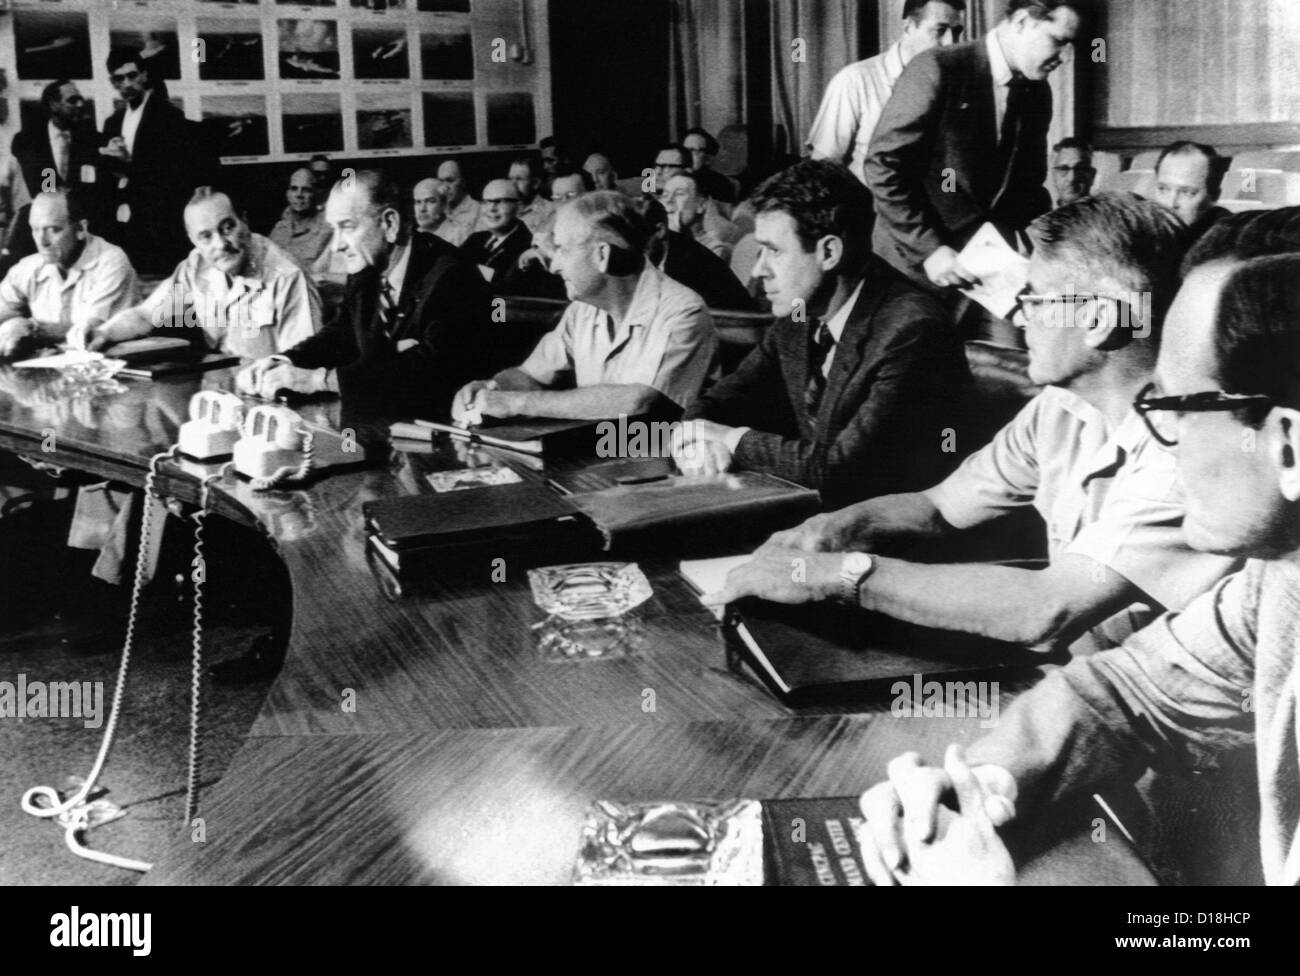 El presidente Lyndon Johnson se reúne con dirigentes militares. En el campamento de K. L. Smith, cuarteles militares para el Pacífico, L-R: Gen. John Foto de stock